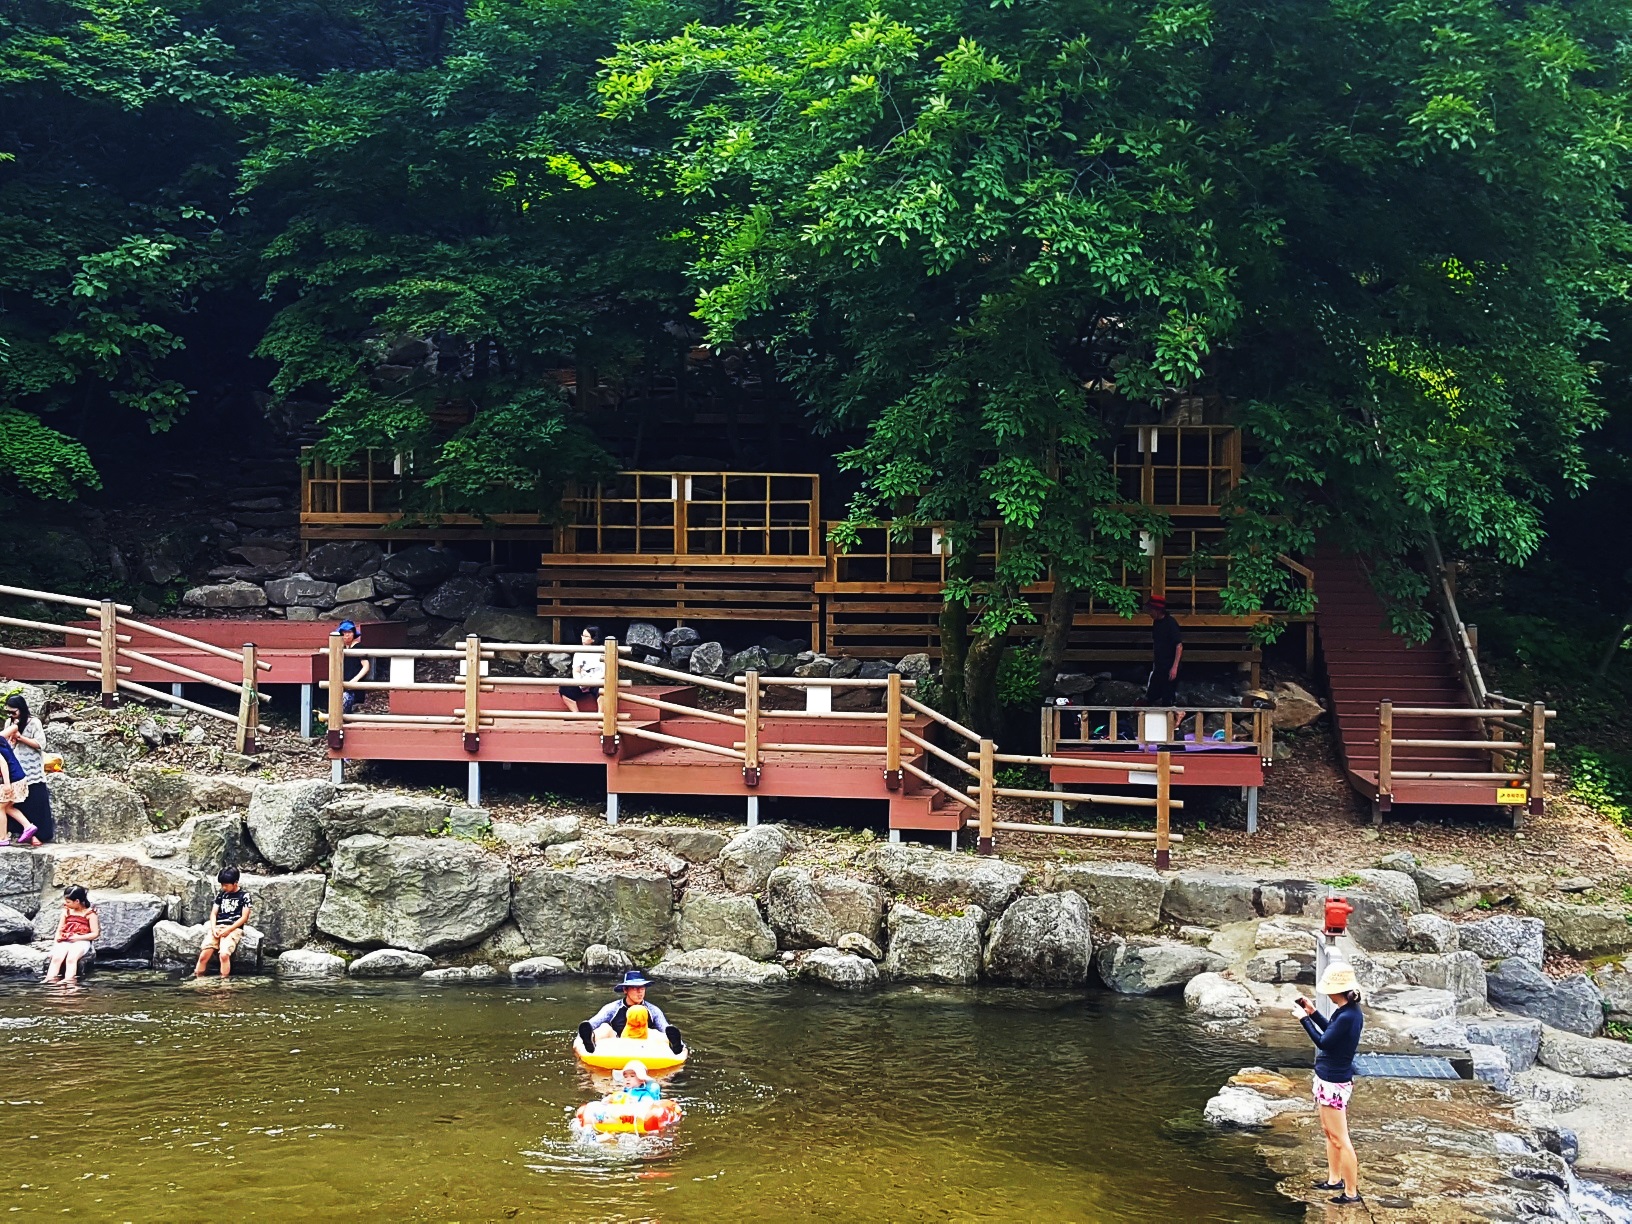 경기도 산림환경연구소는 여름 휴가철을 맞아 오는 7월 13일부터 8월 24일까지 남양주 수동면 소재 축령산자연휴양림 내 야외 물놀이장을 운영한다.